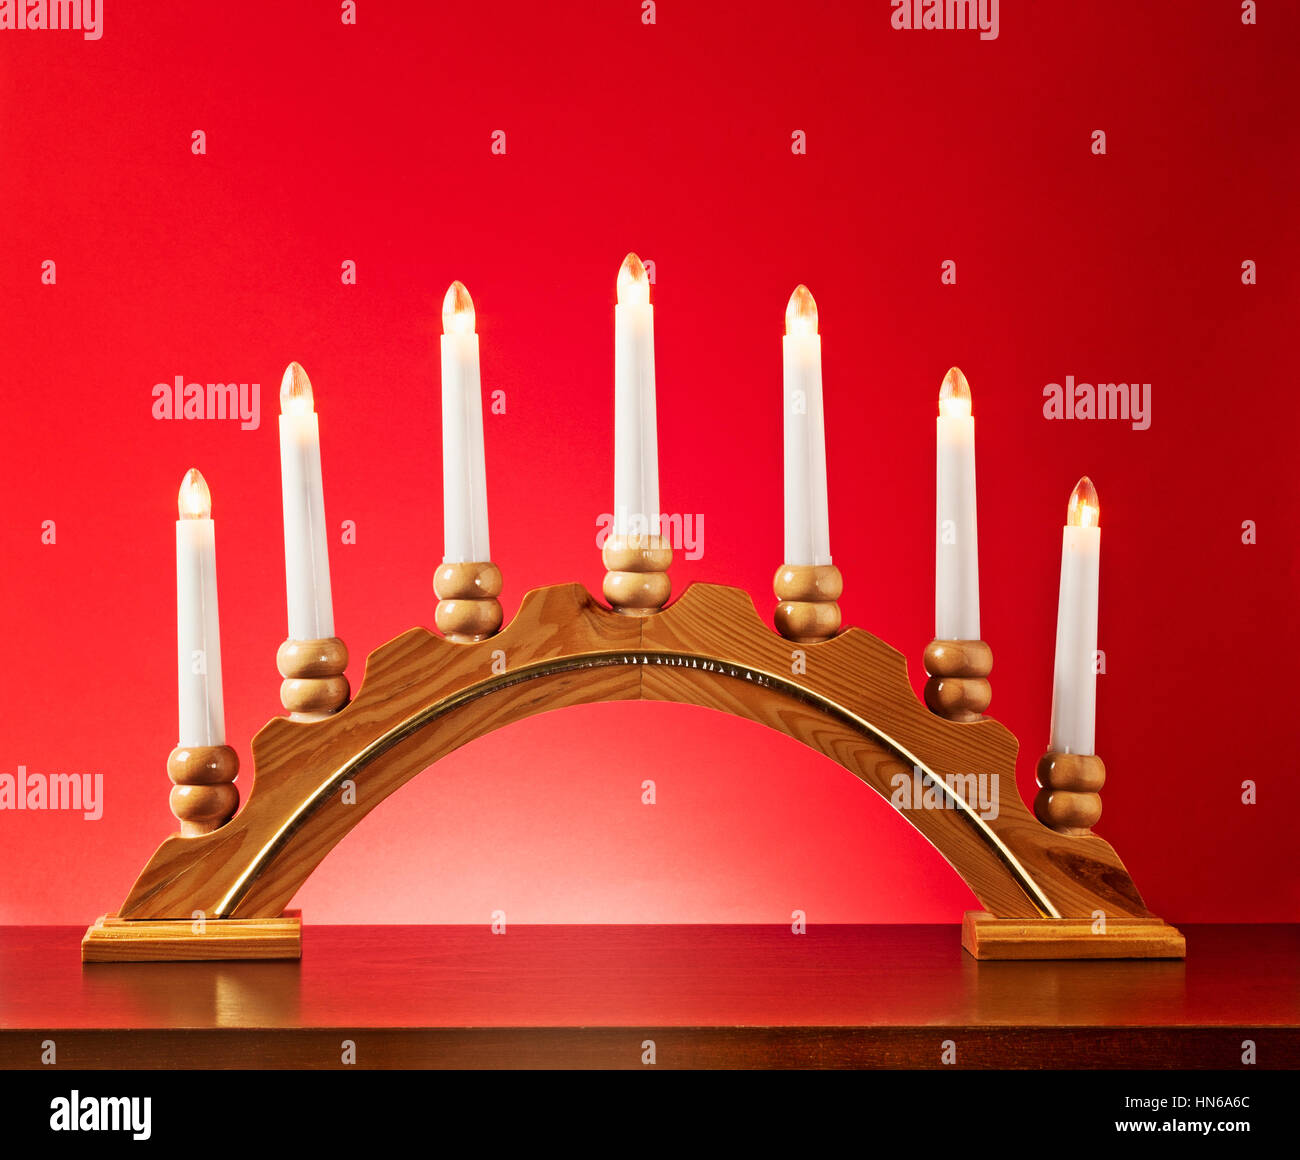 Navidad candelabro de madera con bombillas eléctricas sobre fondo rojo, luces y decoración de adviento Foto de stock